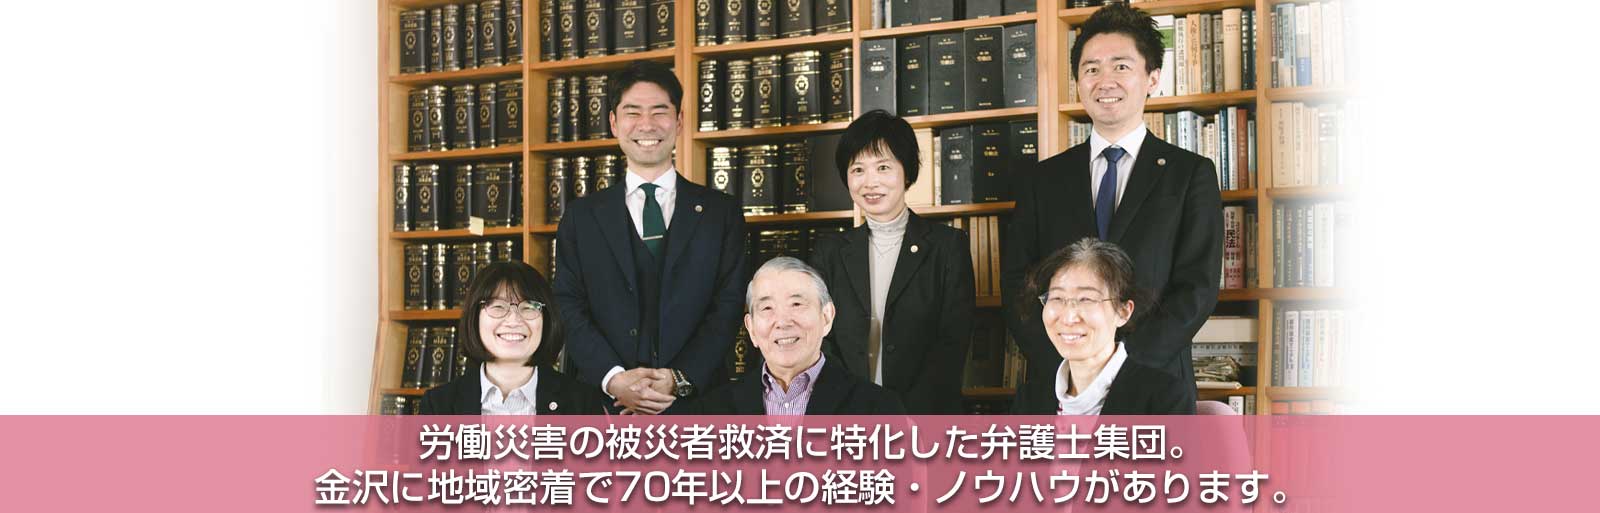 労働災害の被害者救済に特化した弁護士集団。金沢に地域密着で70年以上の経験・ノウハウが自慢です。